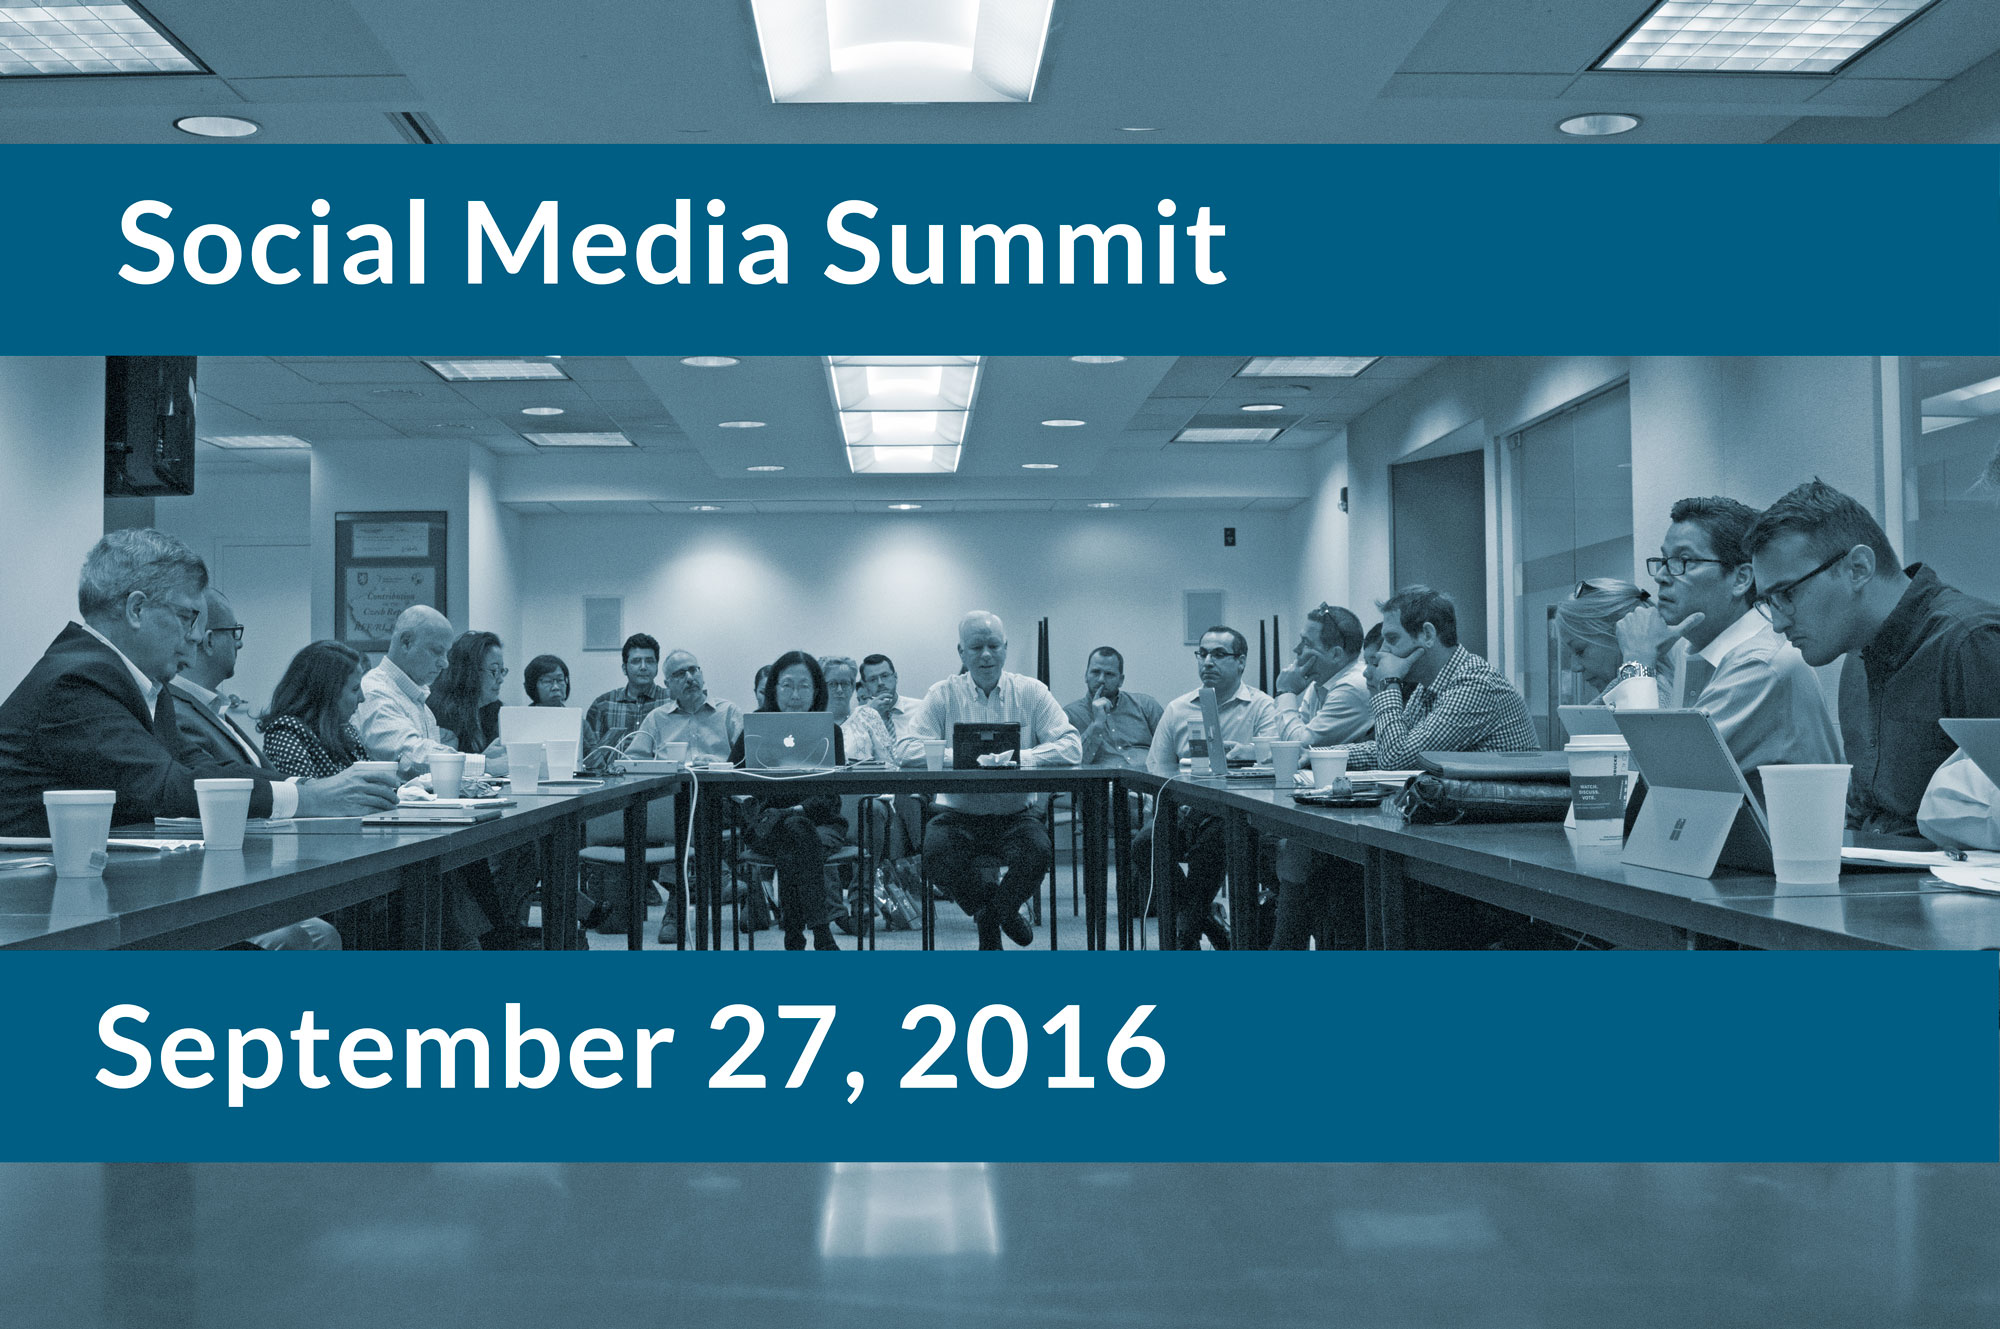 Social Media Summit participants meet.